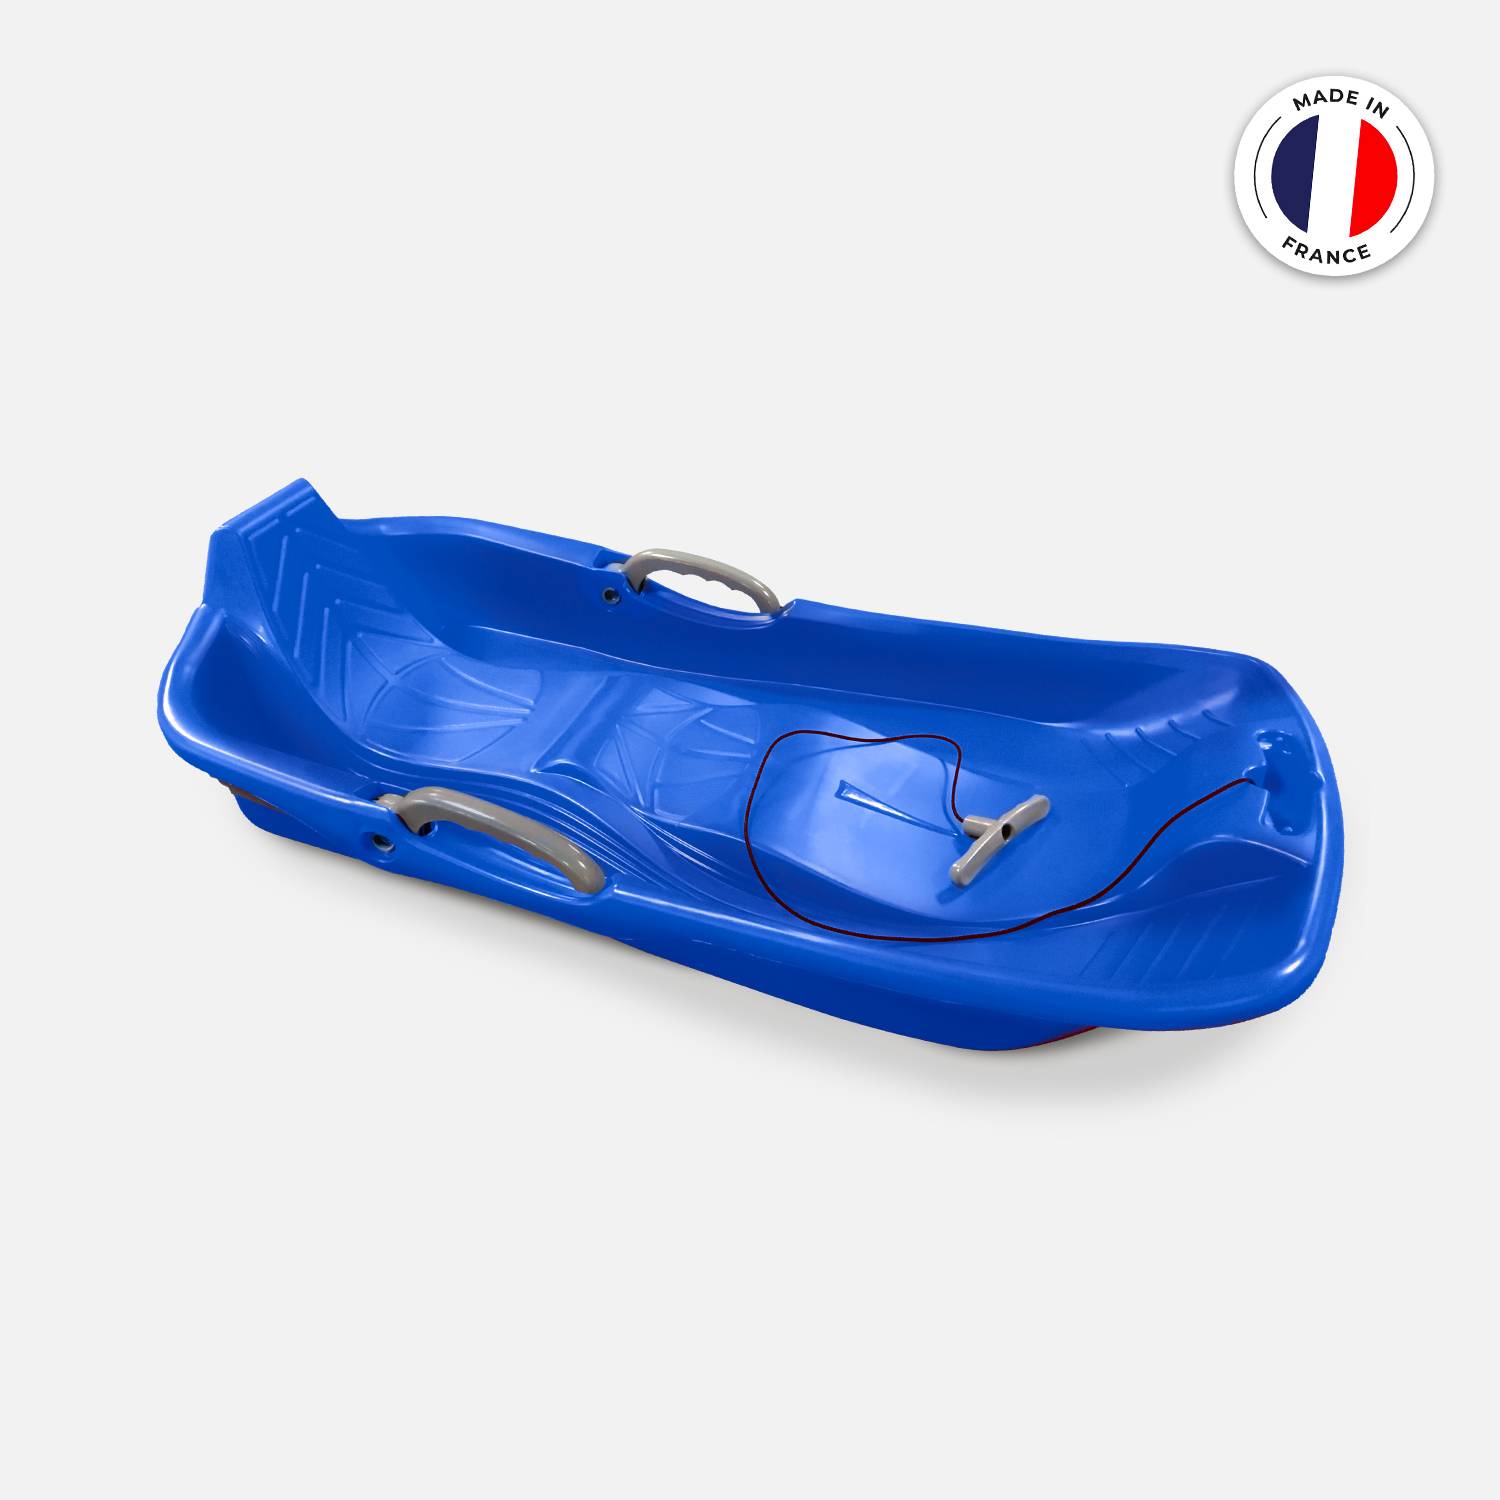 Luge 2 places bleue avec freins, ficelle et poignée tire luge, Made in France  Photo1